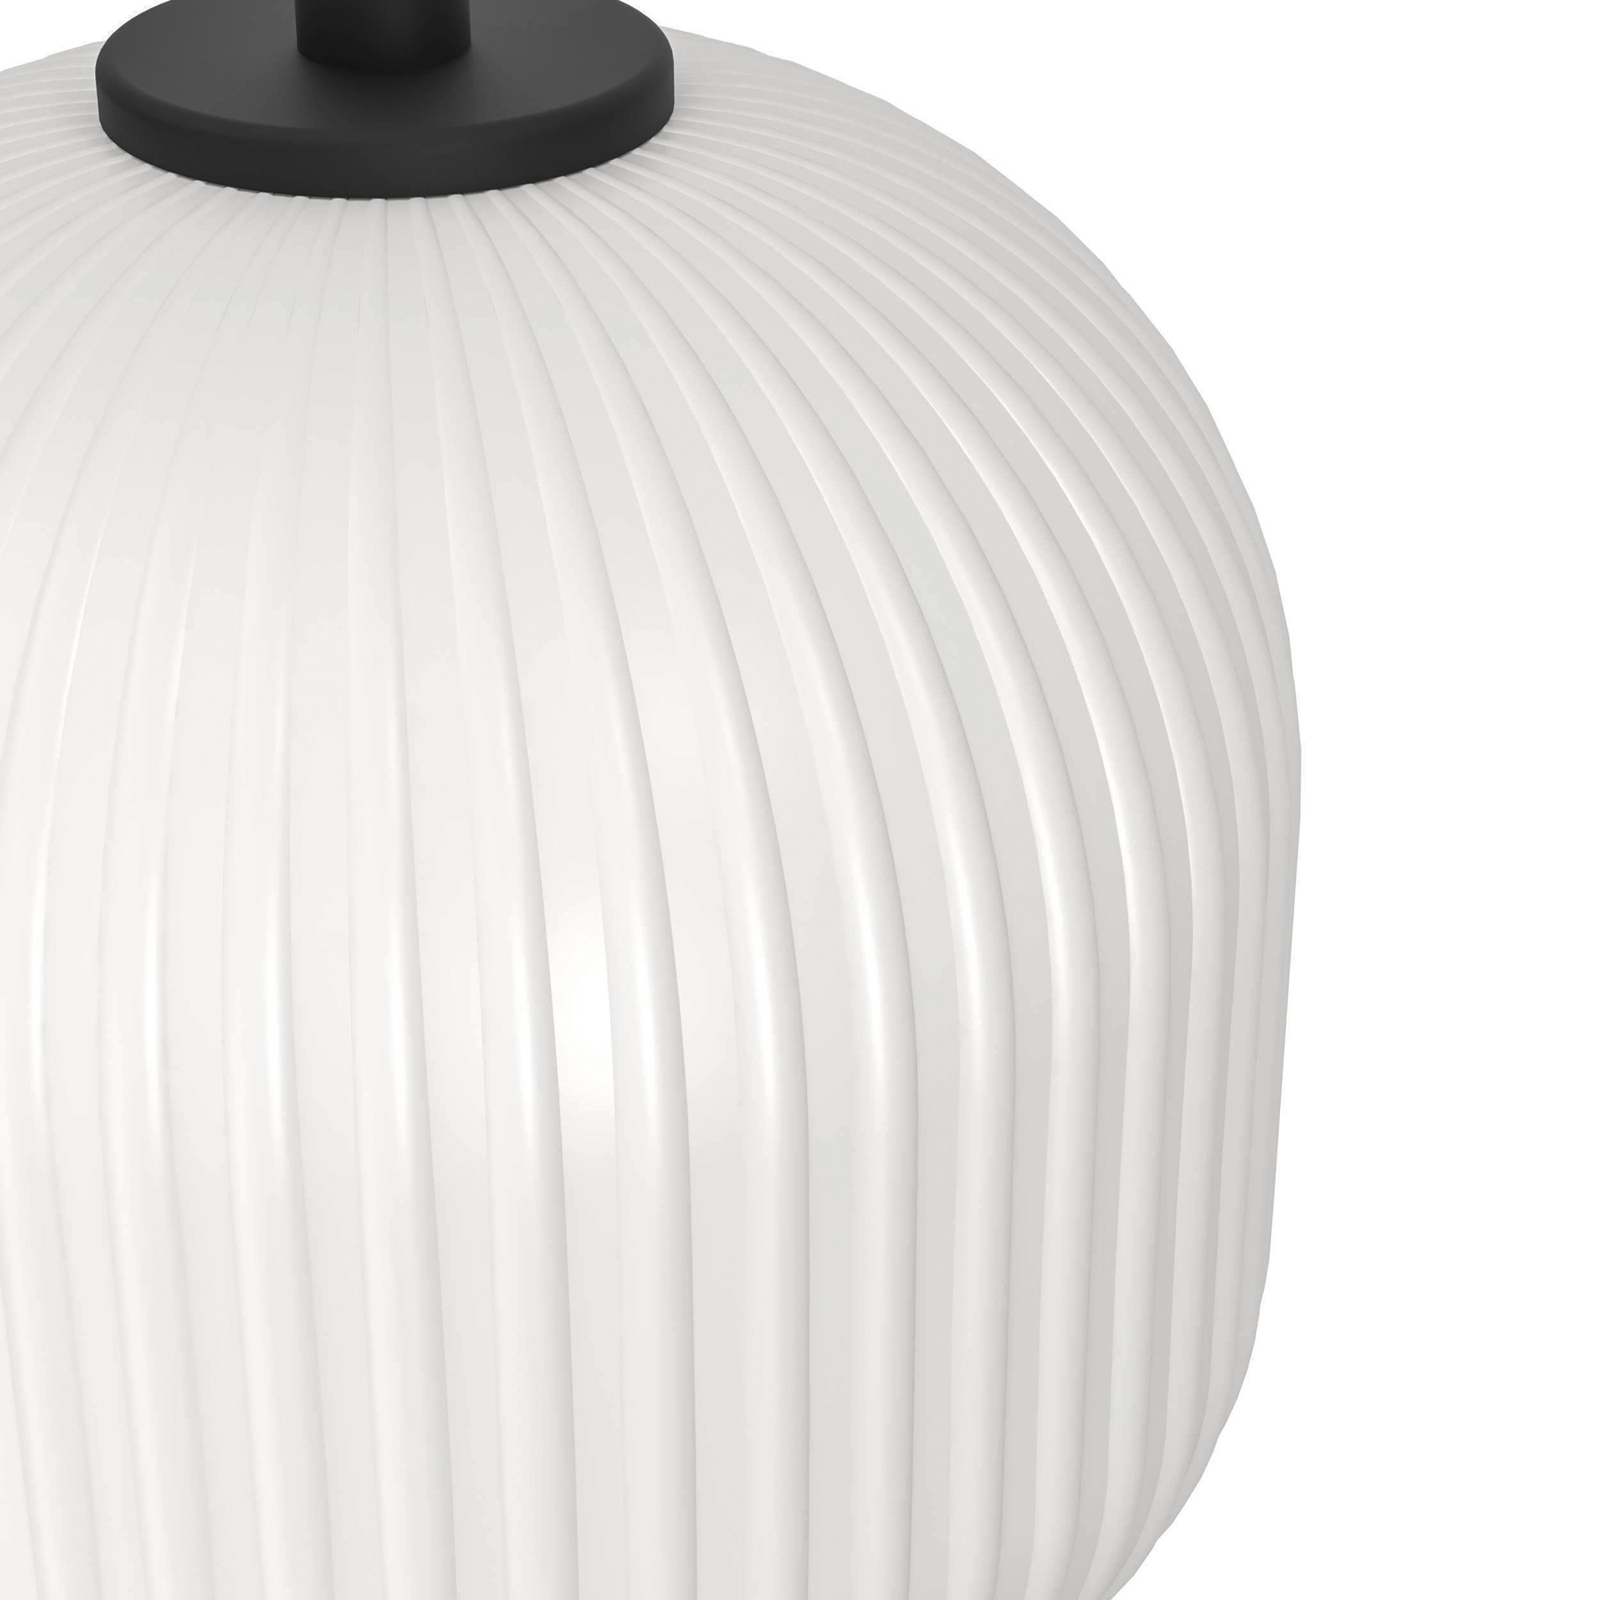 Mantunalle pendant light, Ø 62 cm, black/white, 3-bulb.